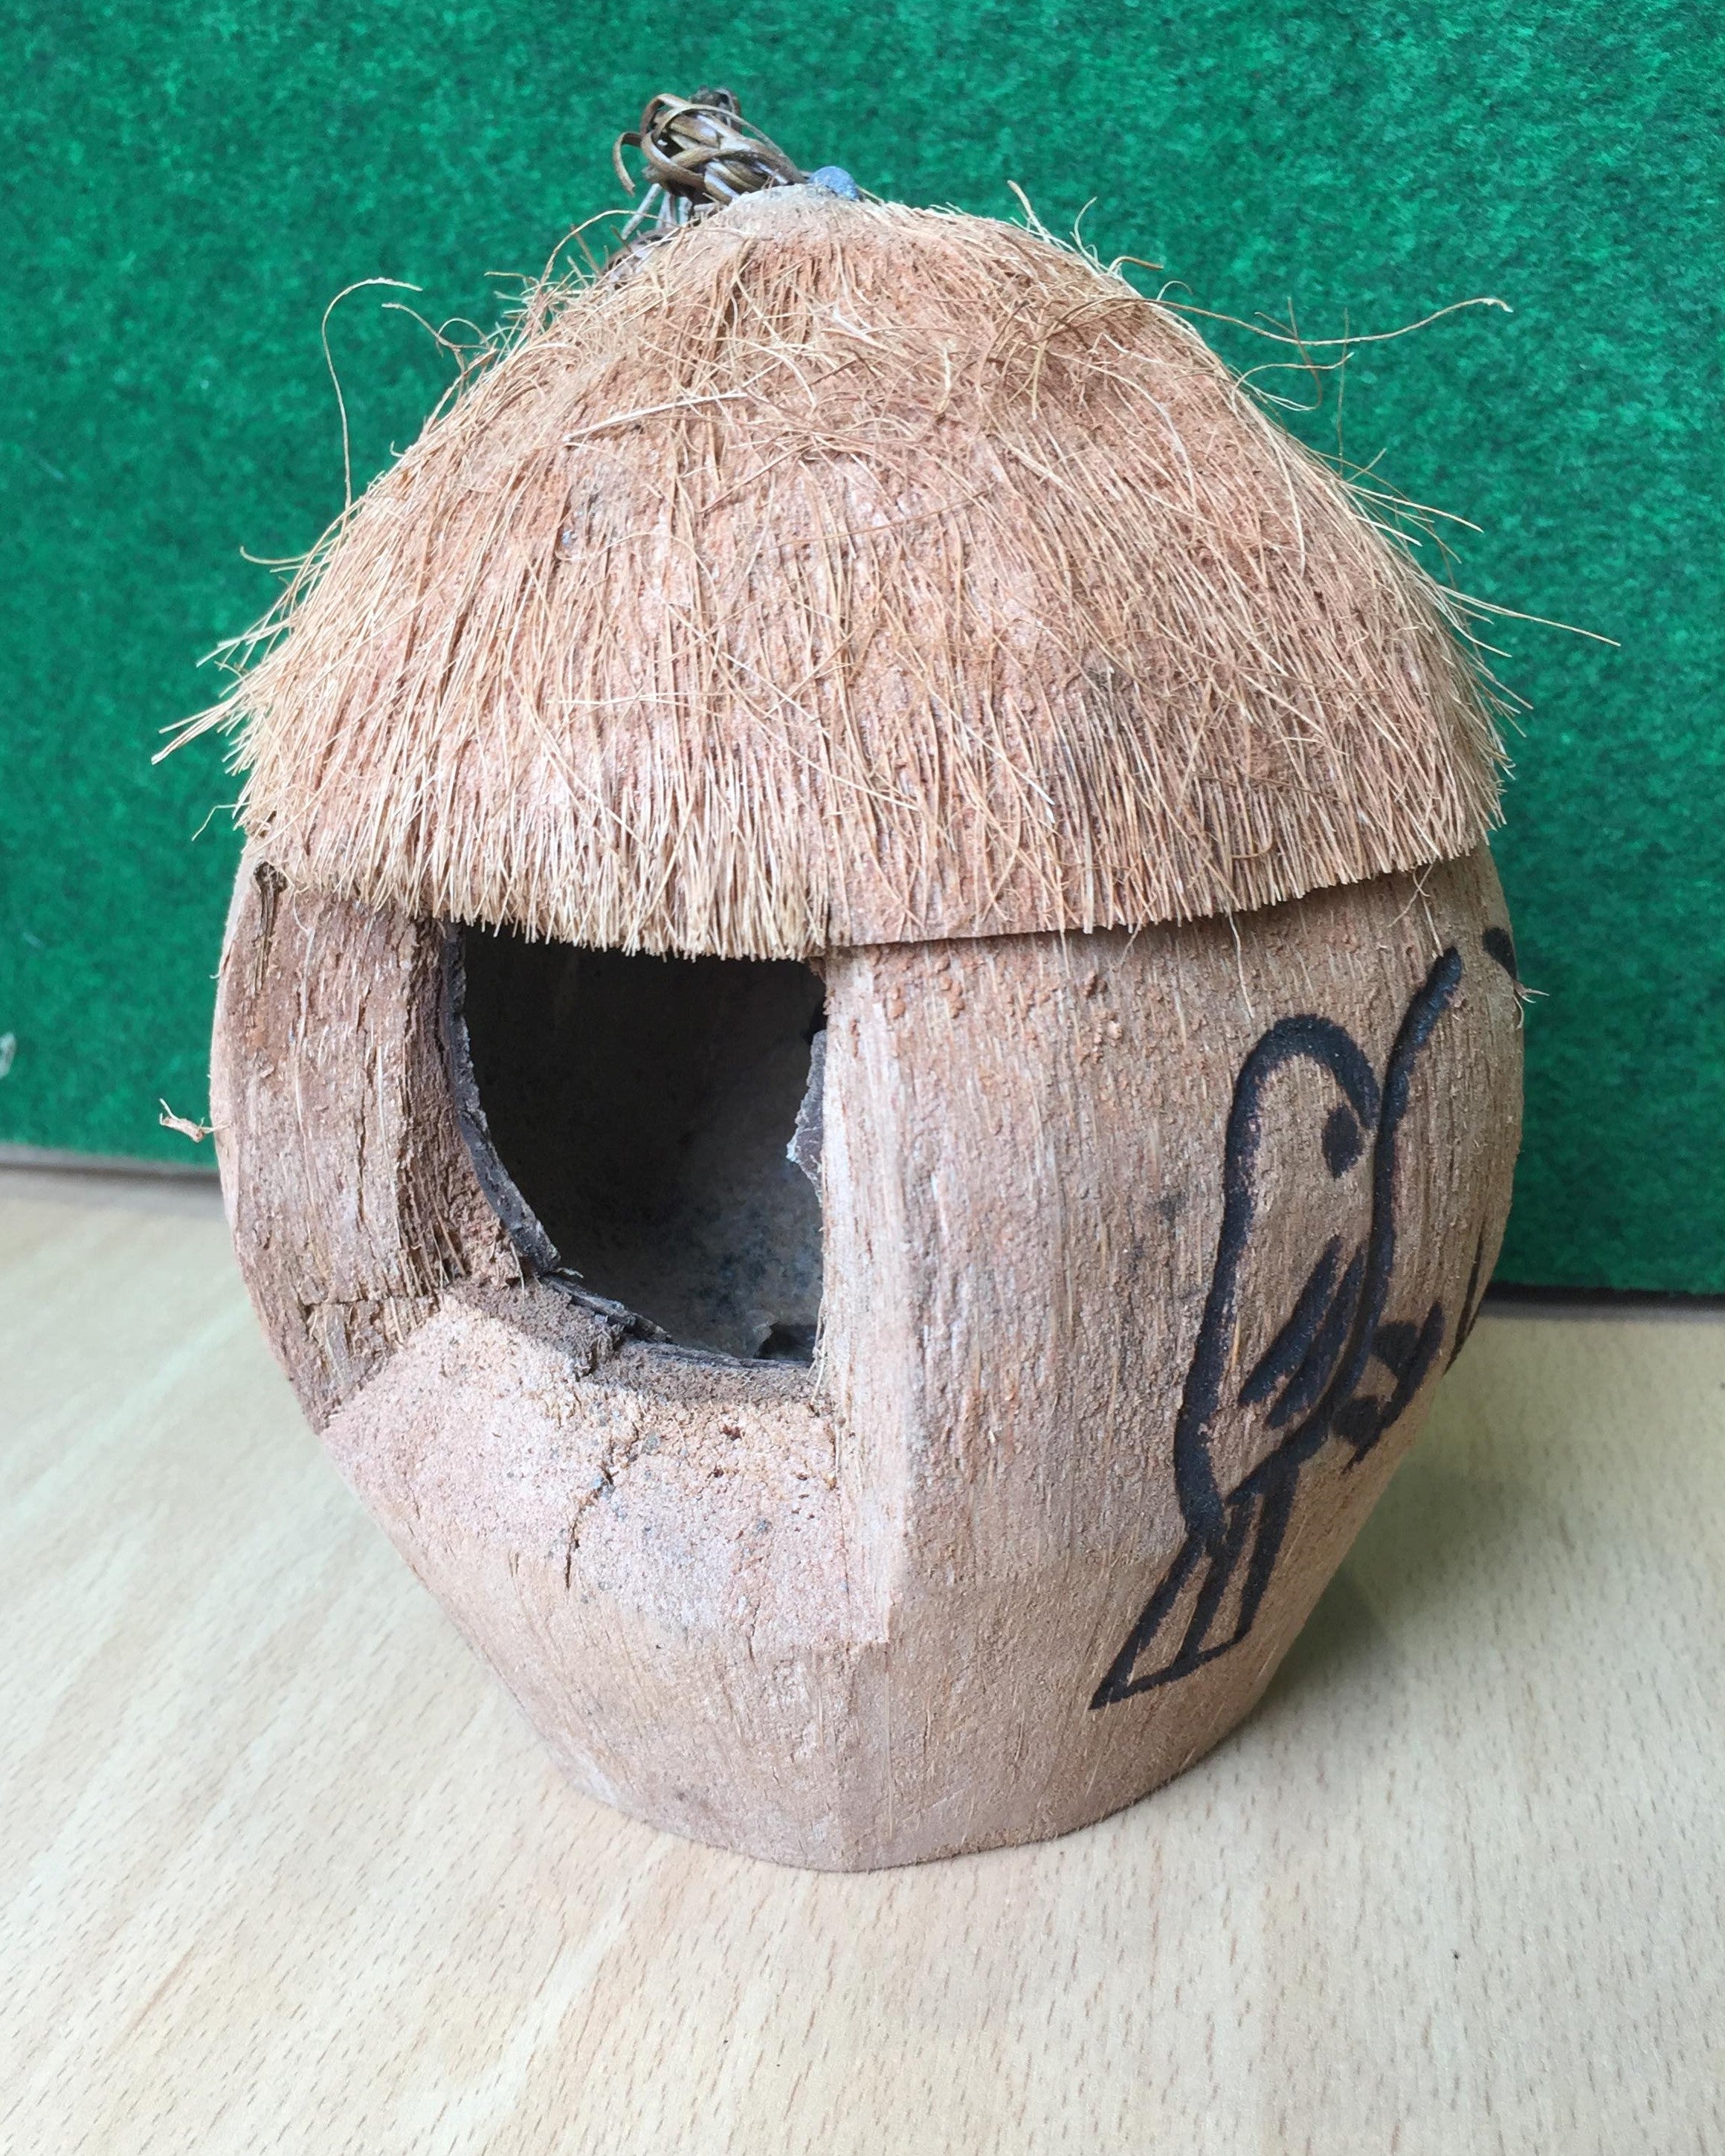 Coconut Bird House